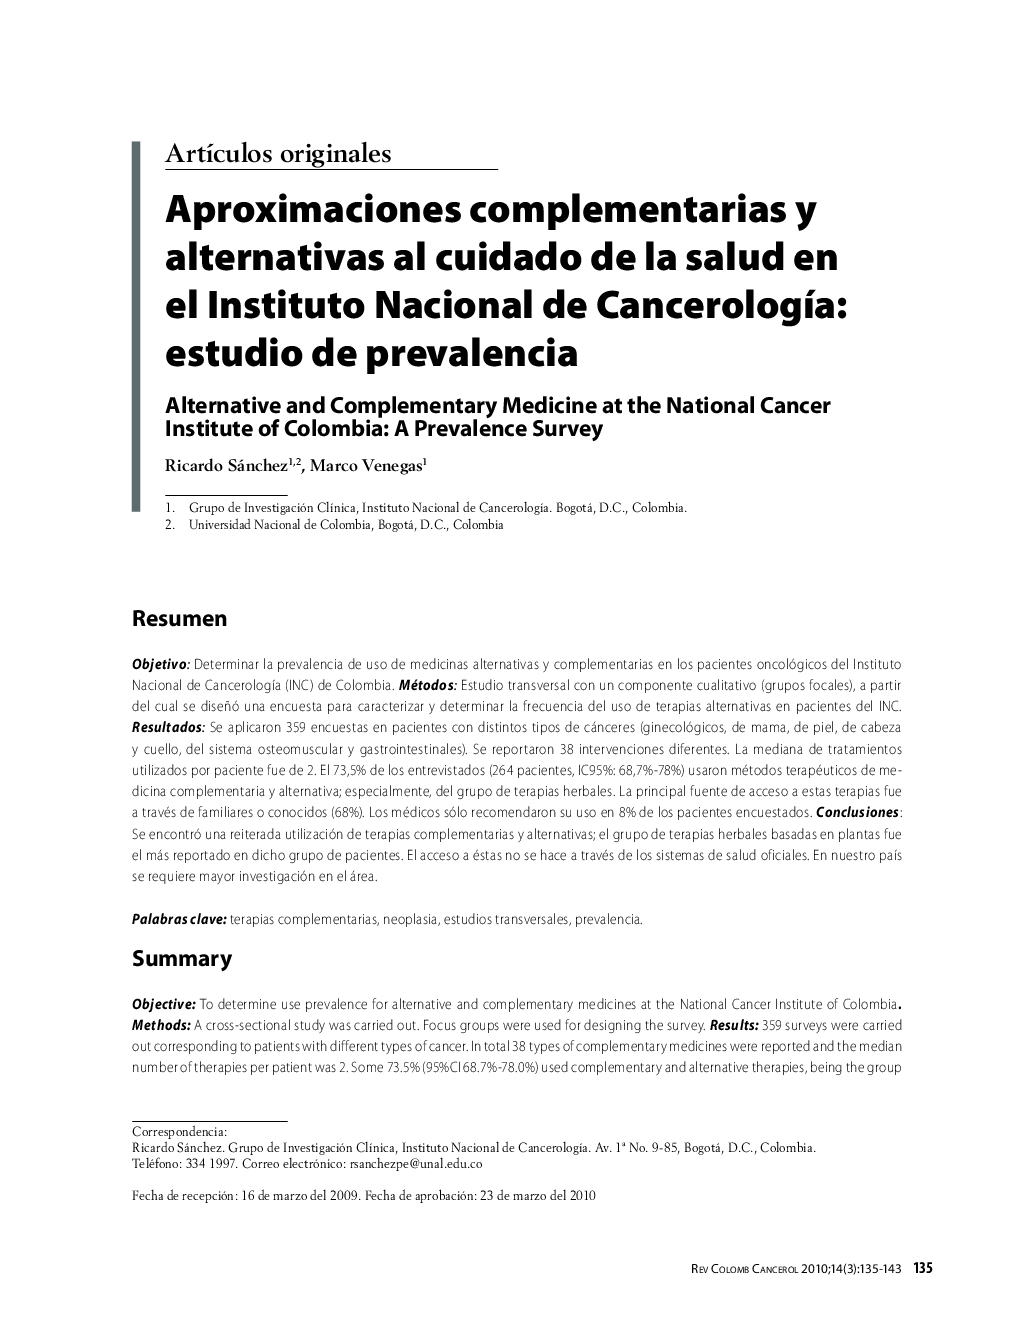 Aproximaciones complementarias y alternativas al cuidado de la salud en el Instituto Nacional de CancerologÃ­a: estudio de prevalenciaAlternative and Complementary Medicine at the National Cancer Institute of Colombia: A Prevalence Survey